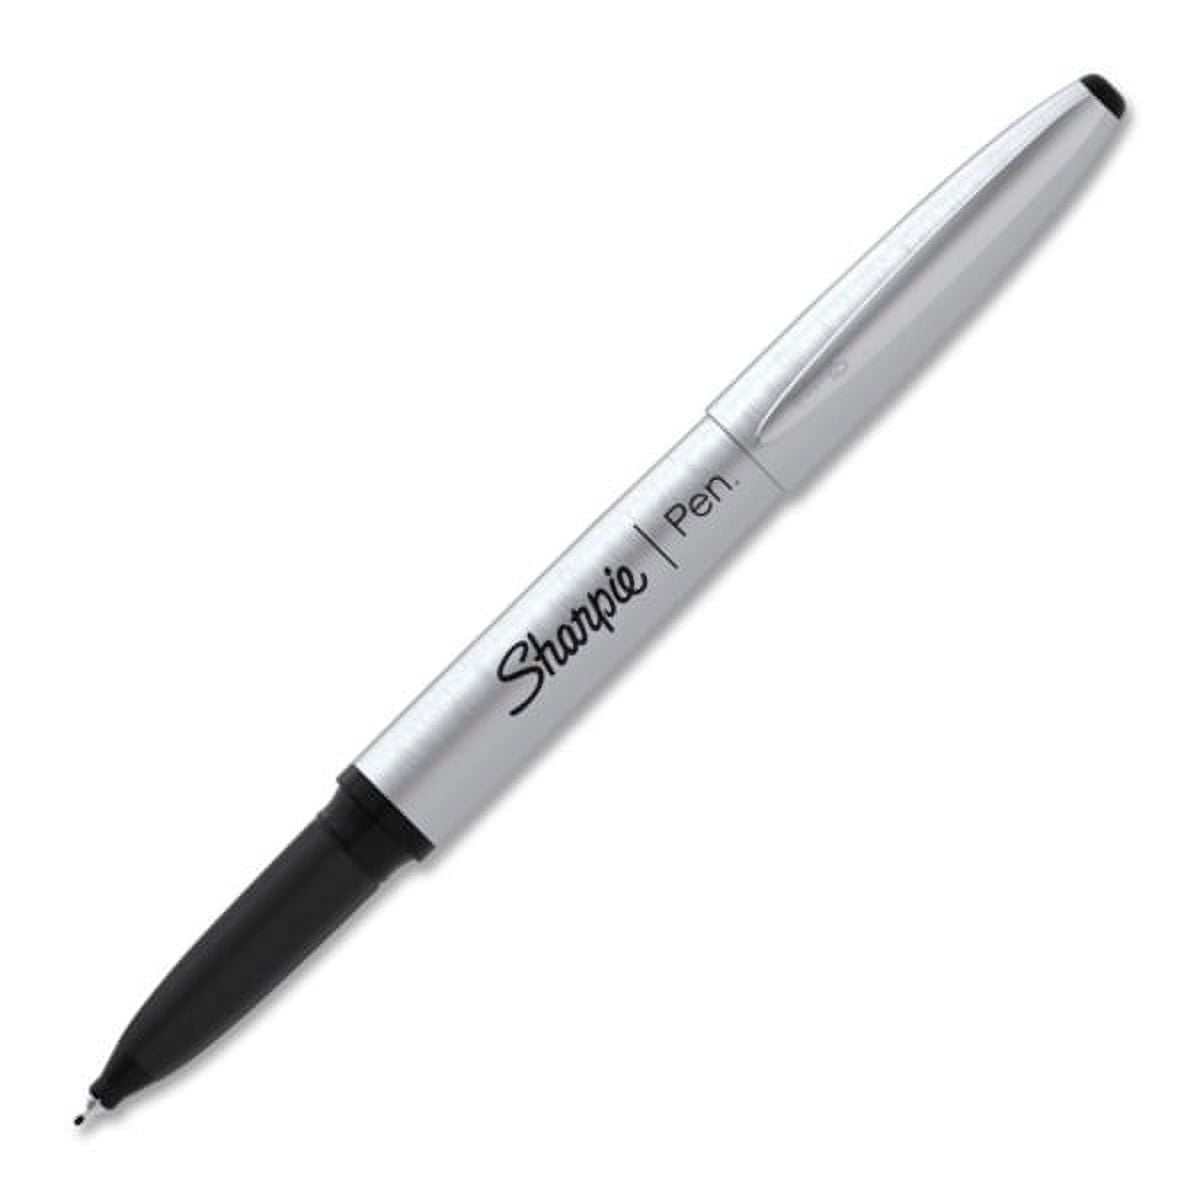 Sharpie S-gel Retractable Gel Pen Medium Point Assorted Ink Dozen